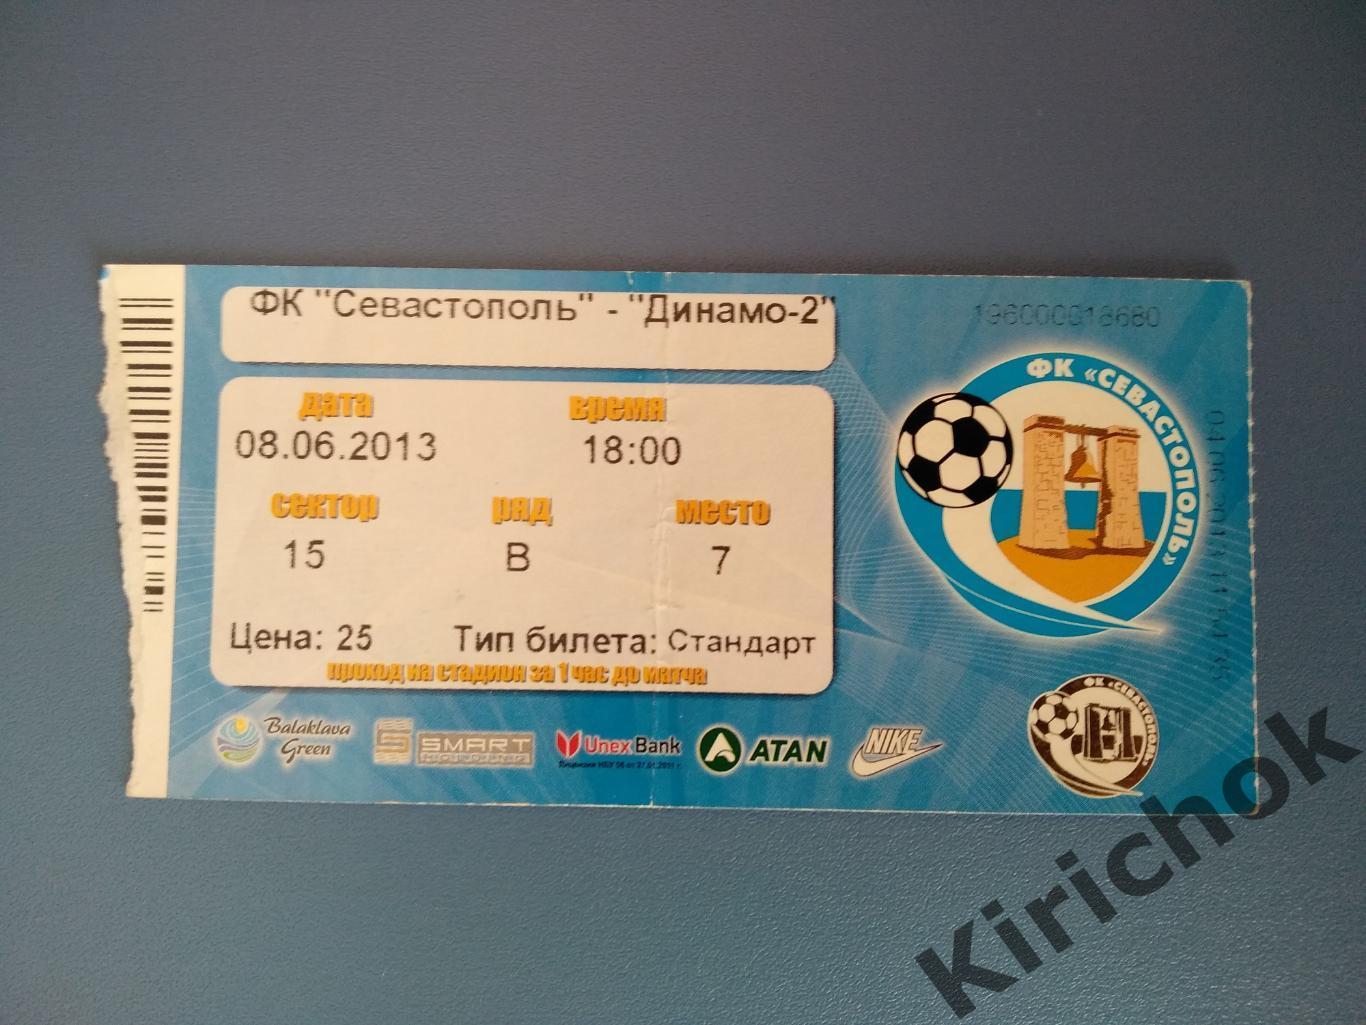 ФК Севастополь Севастополь Крым - Динамо - 2 Киев 2012/2013